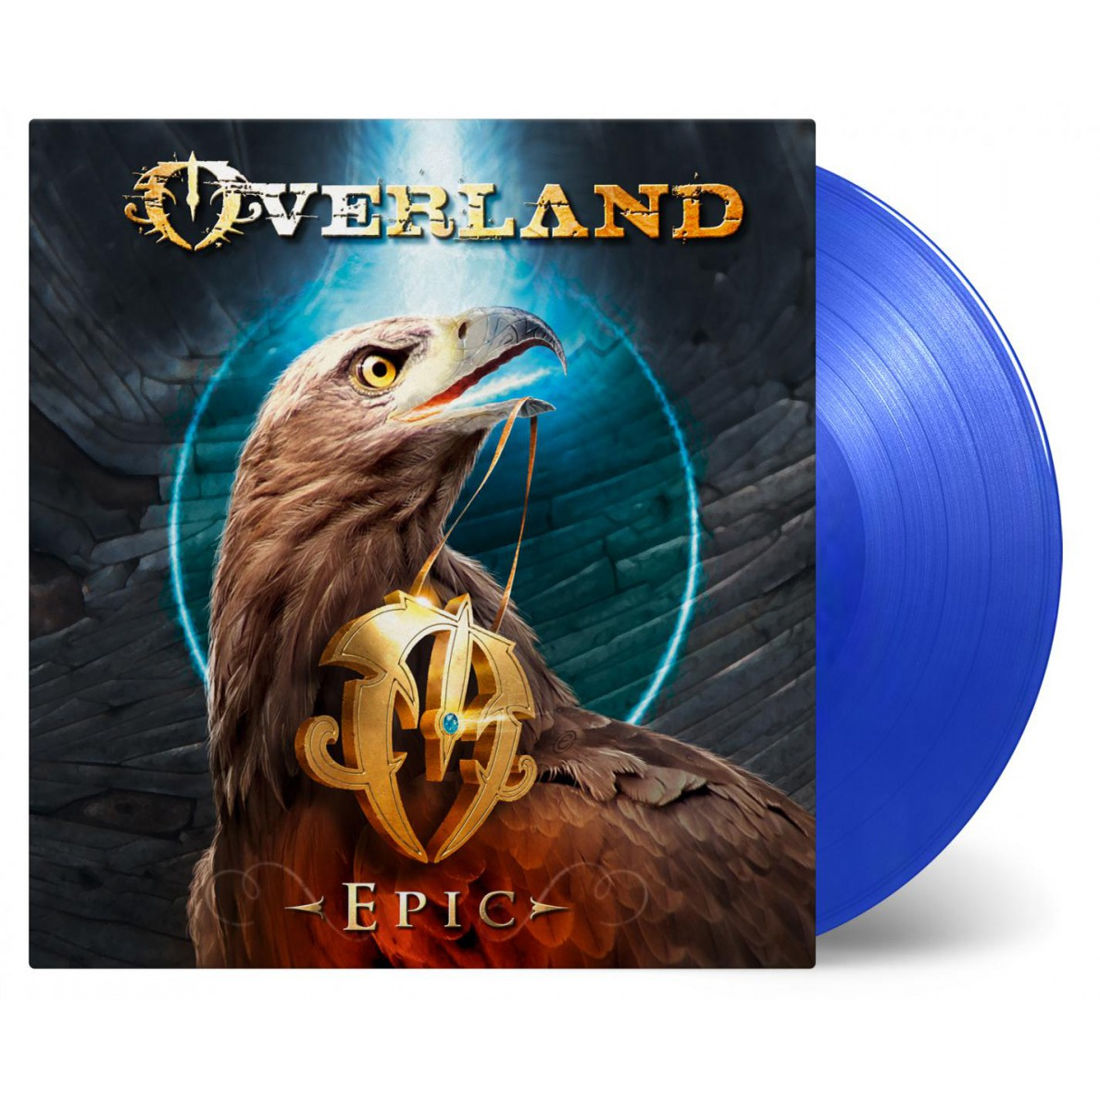 Epic: Limited Blue Vinyl LP